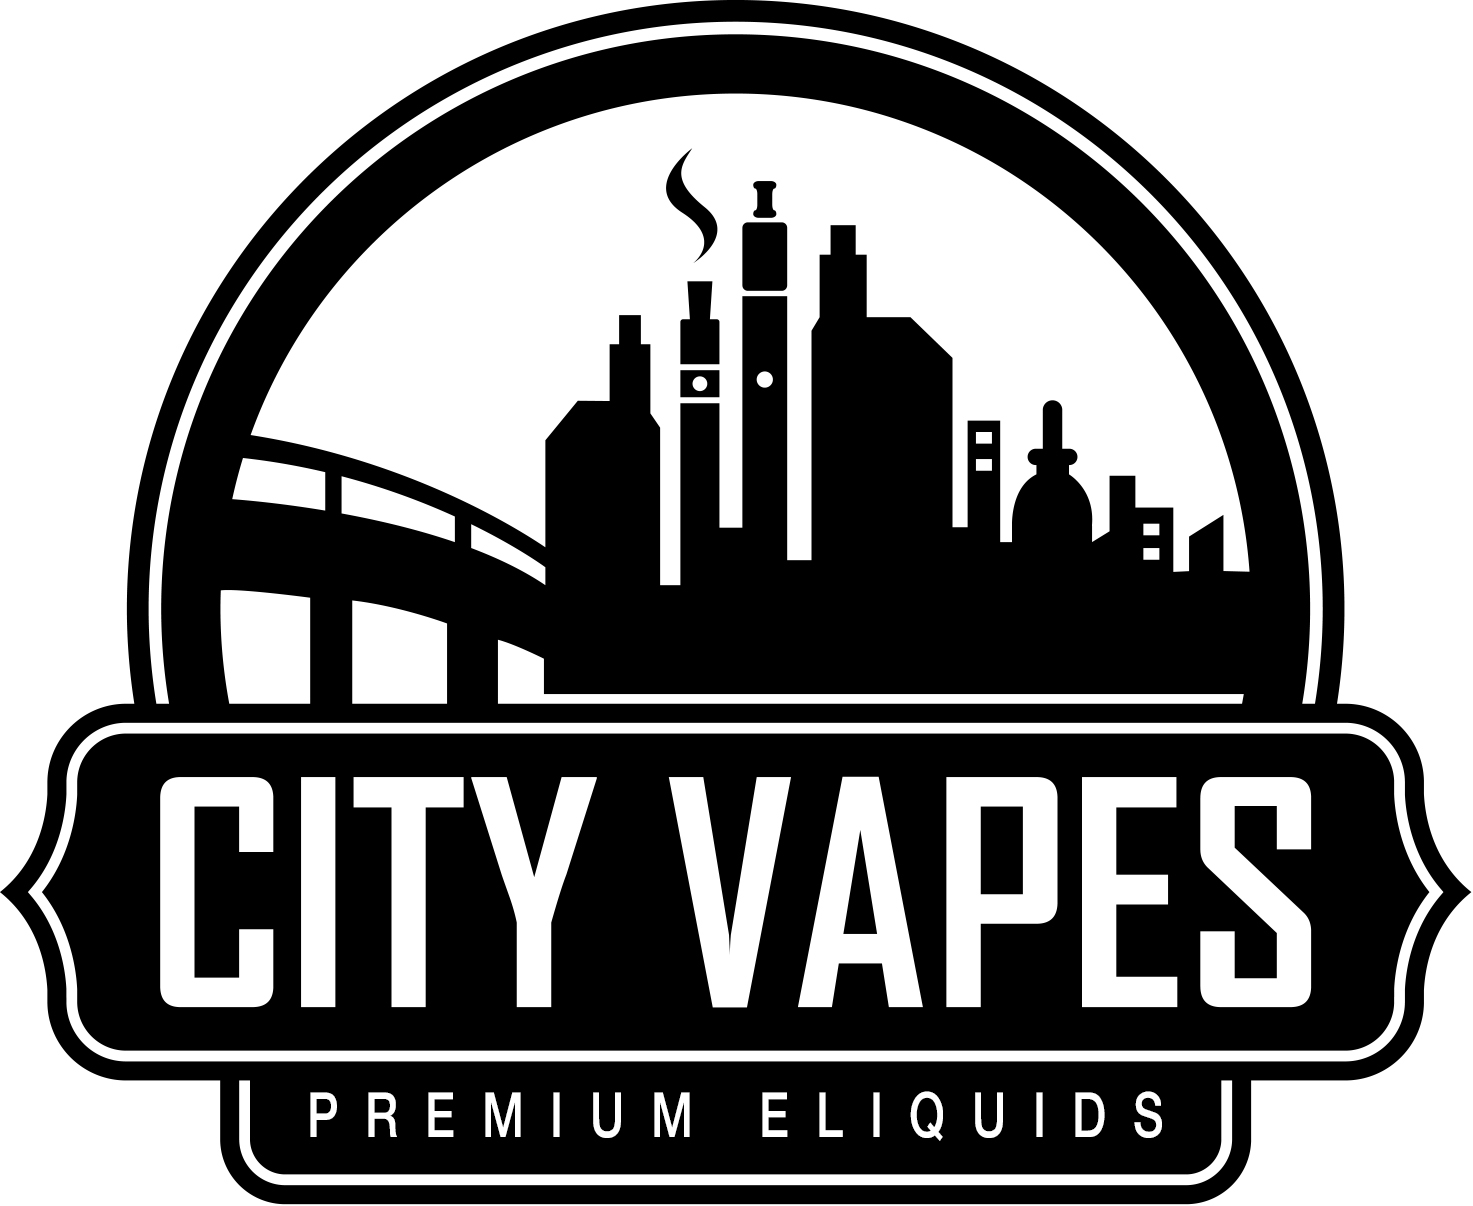 City Vapes